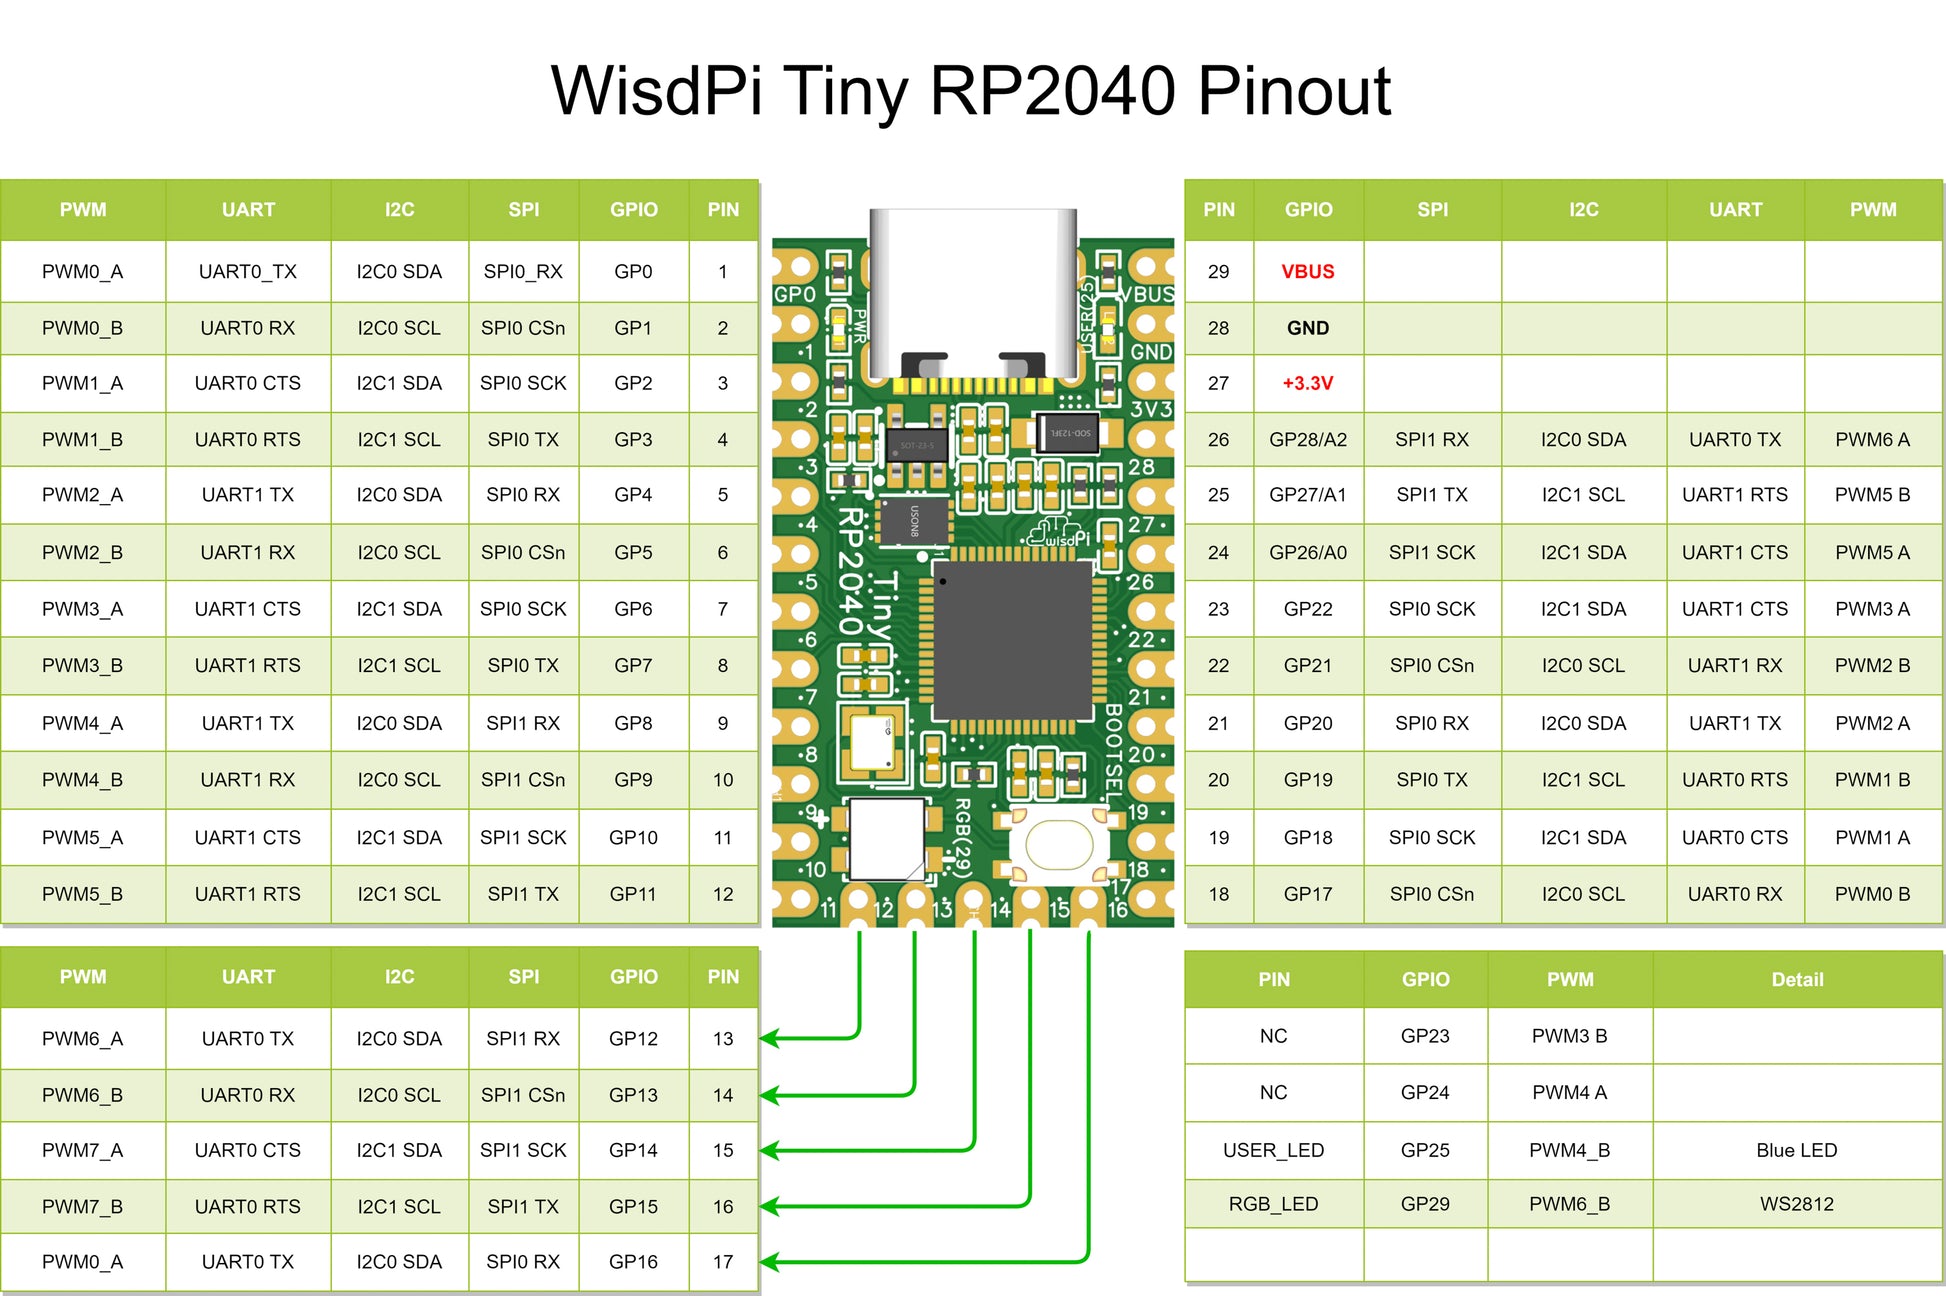 XIAO-RP2040: A tiny RPi Pico alternative